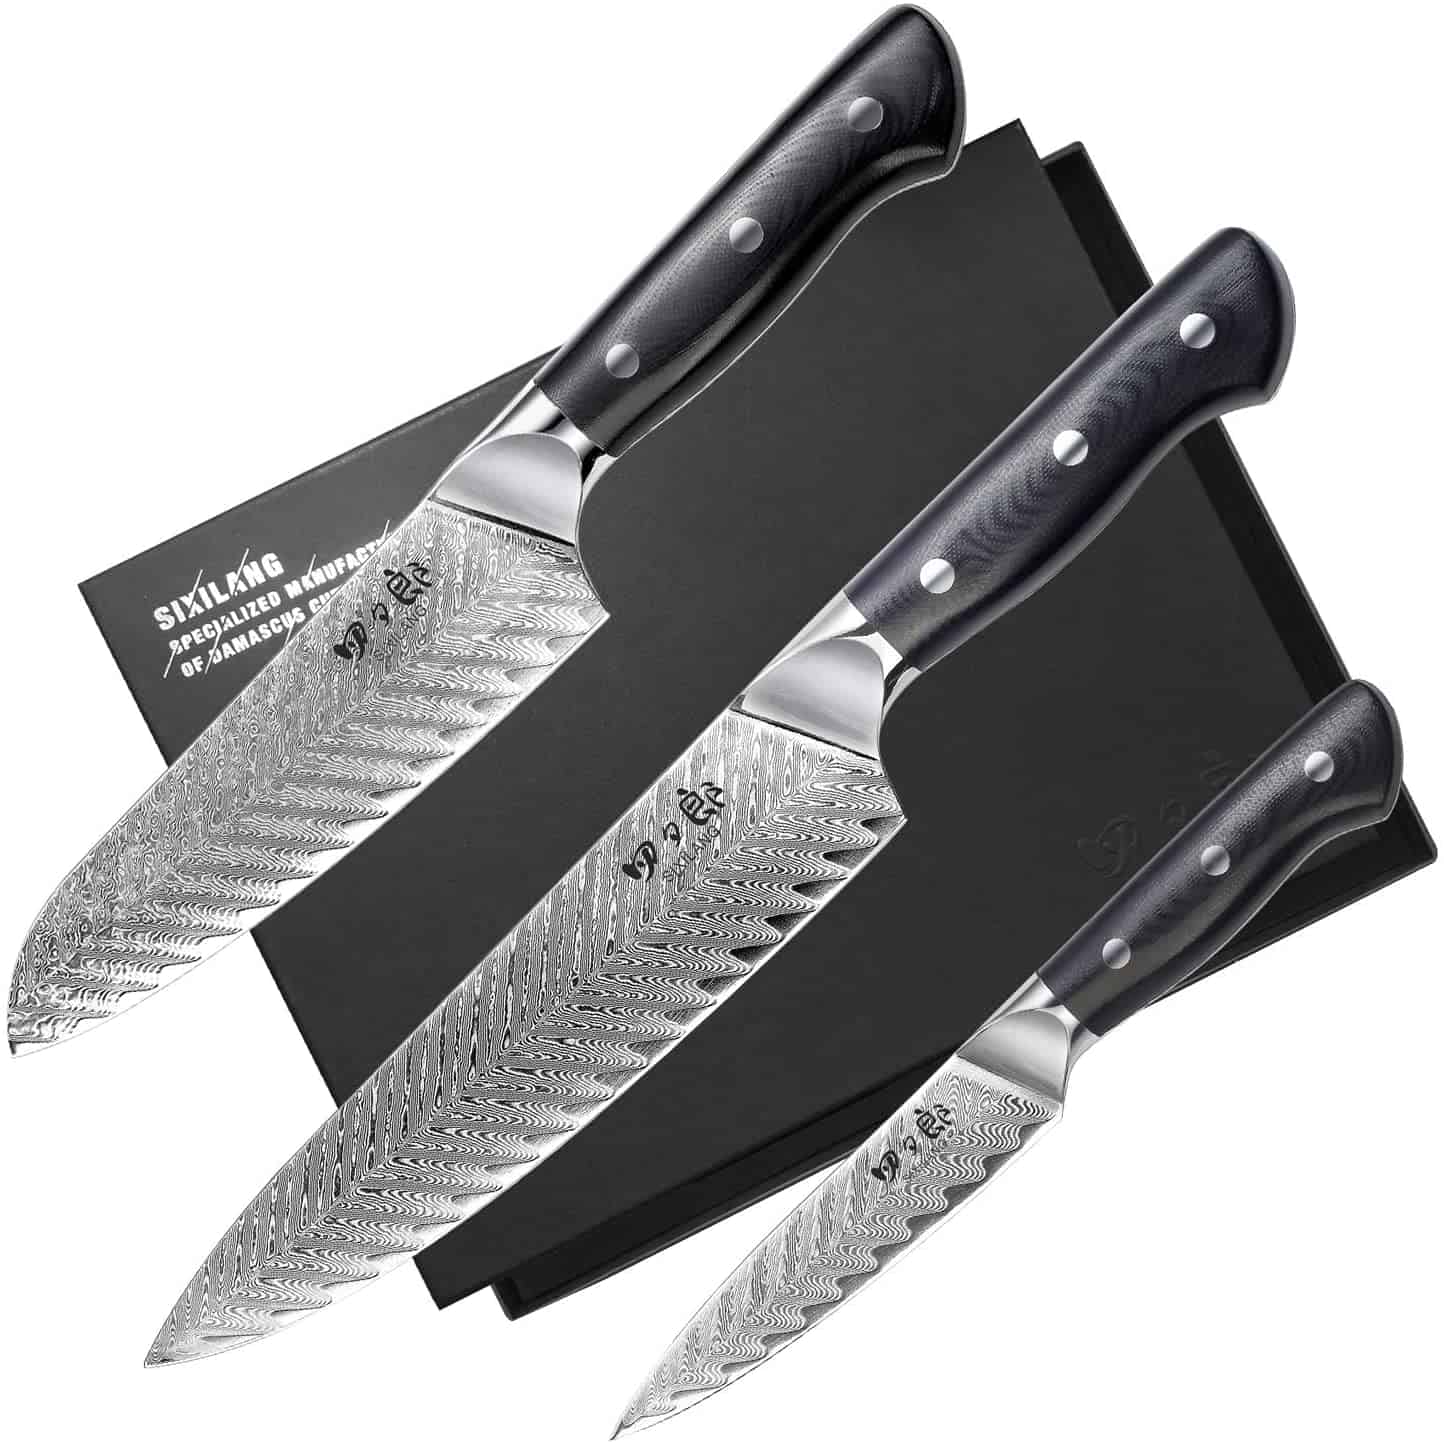 El mejor juego de cuchillos de acero japonés AUS 10 económico: SIXILANG Damascus tres cuchillos de cocina